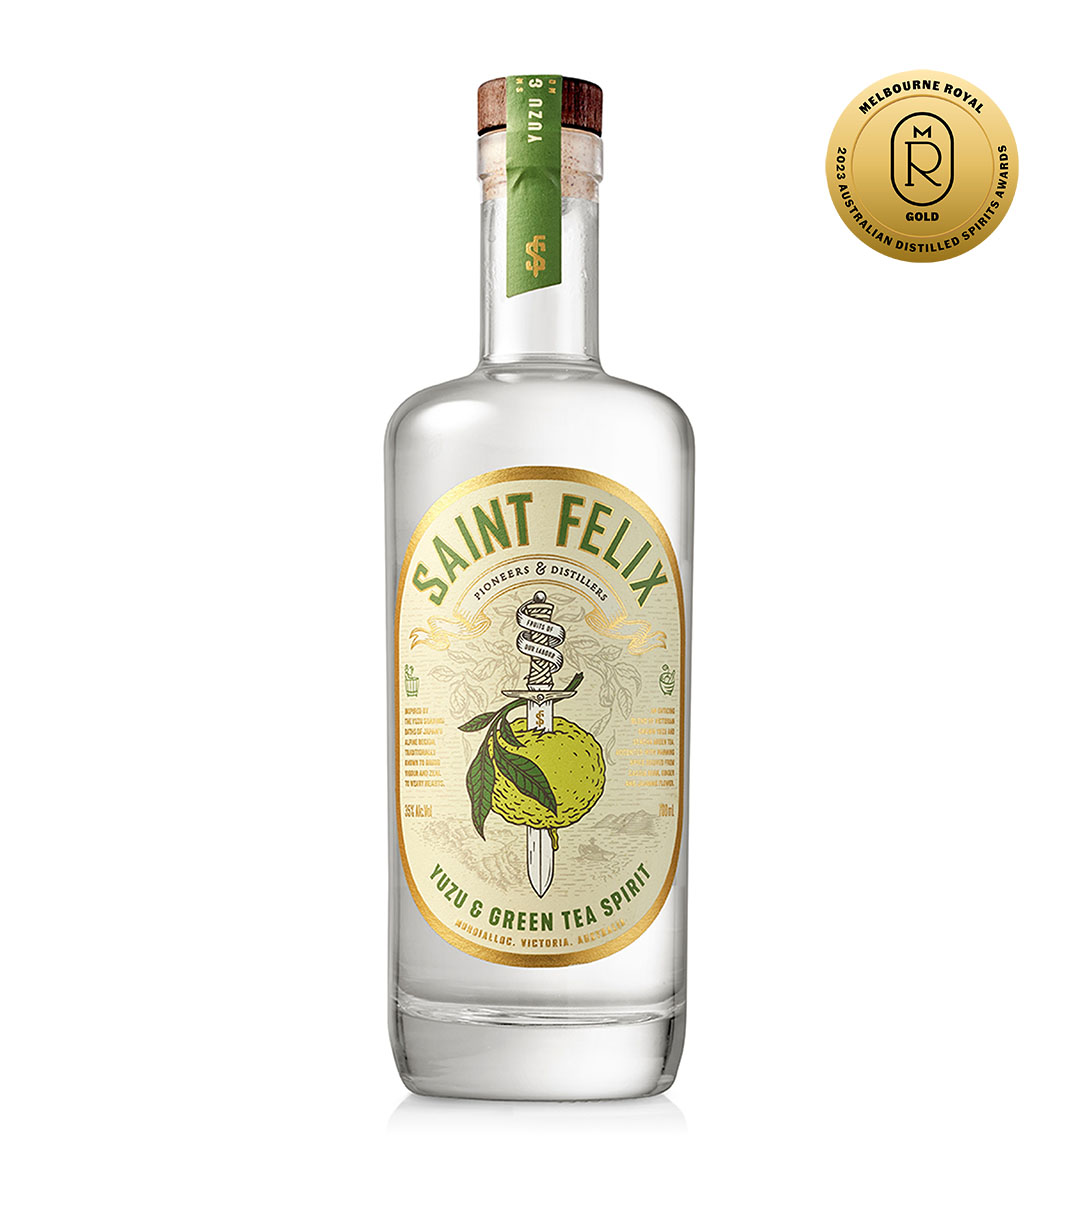 Yuzu Green Tea Spirit - Saint Felix Product